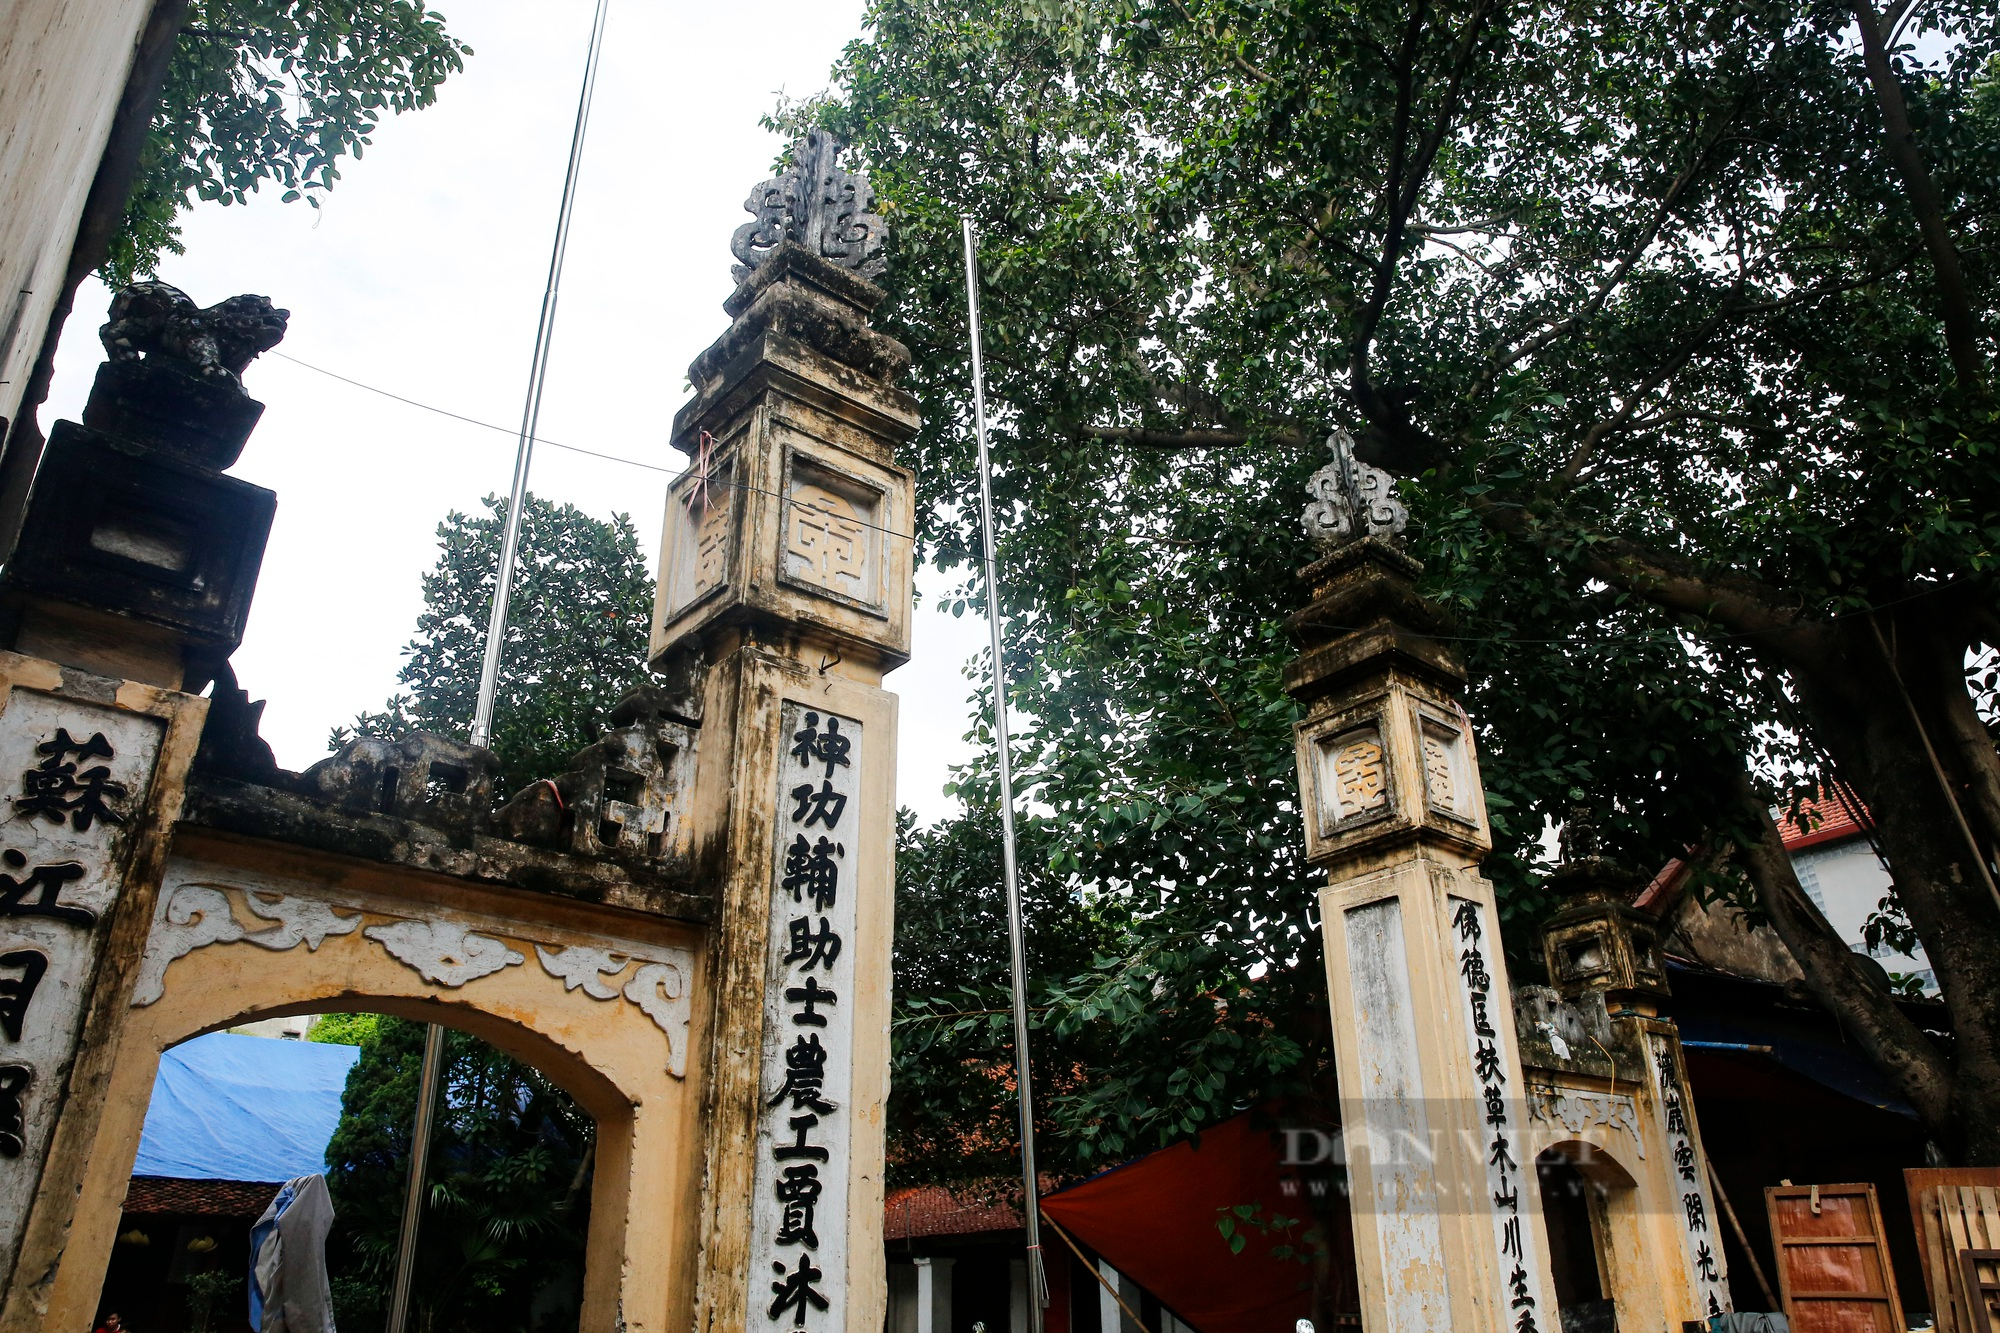 Trầm trồ con phố nhiều cổng, đình làng nhất Hà Nội - Ảnh 11.